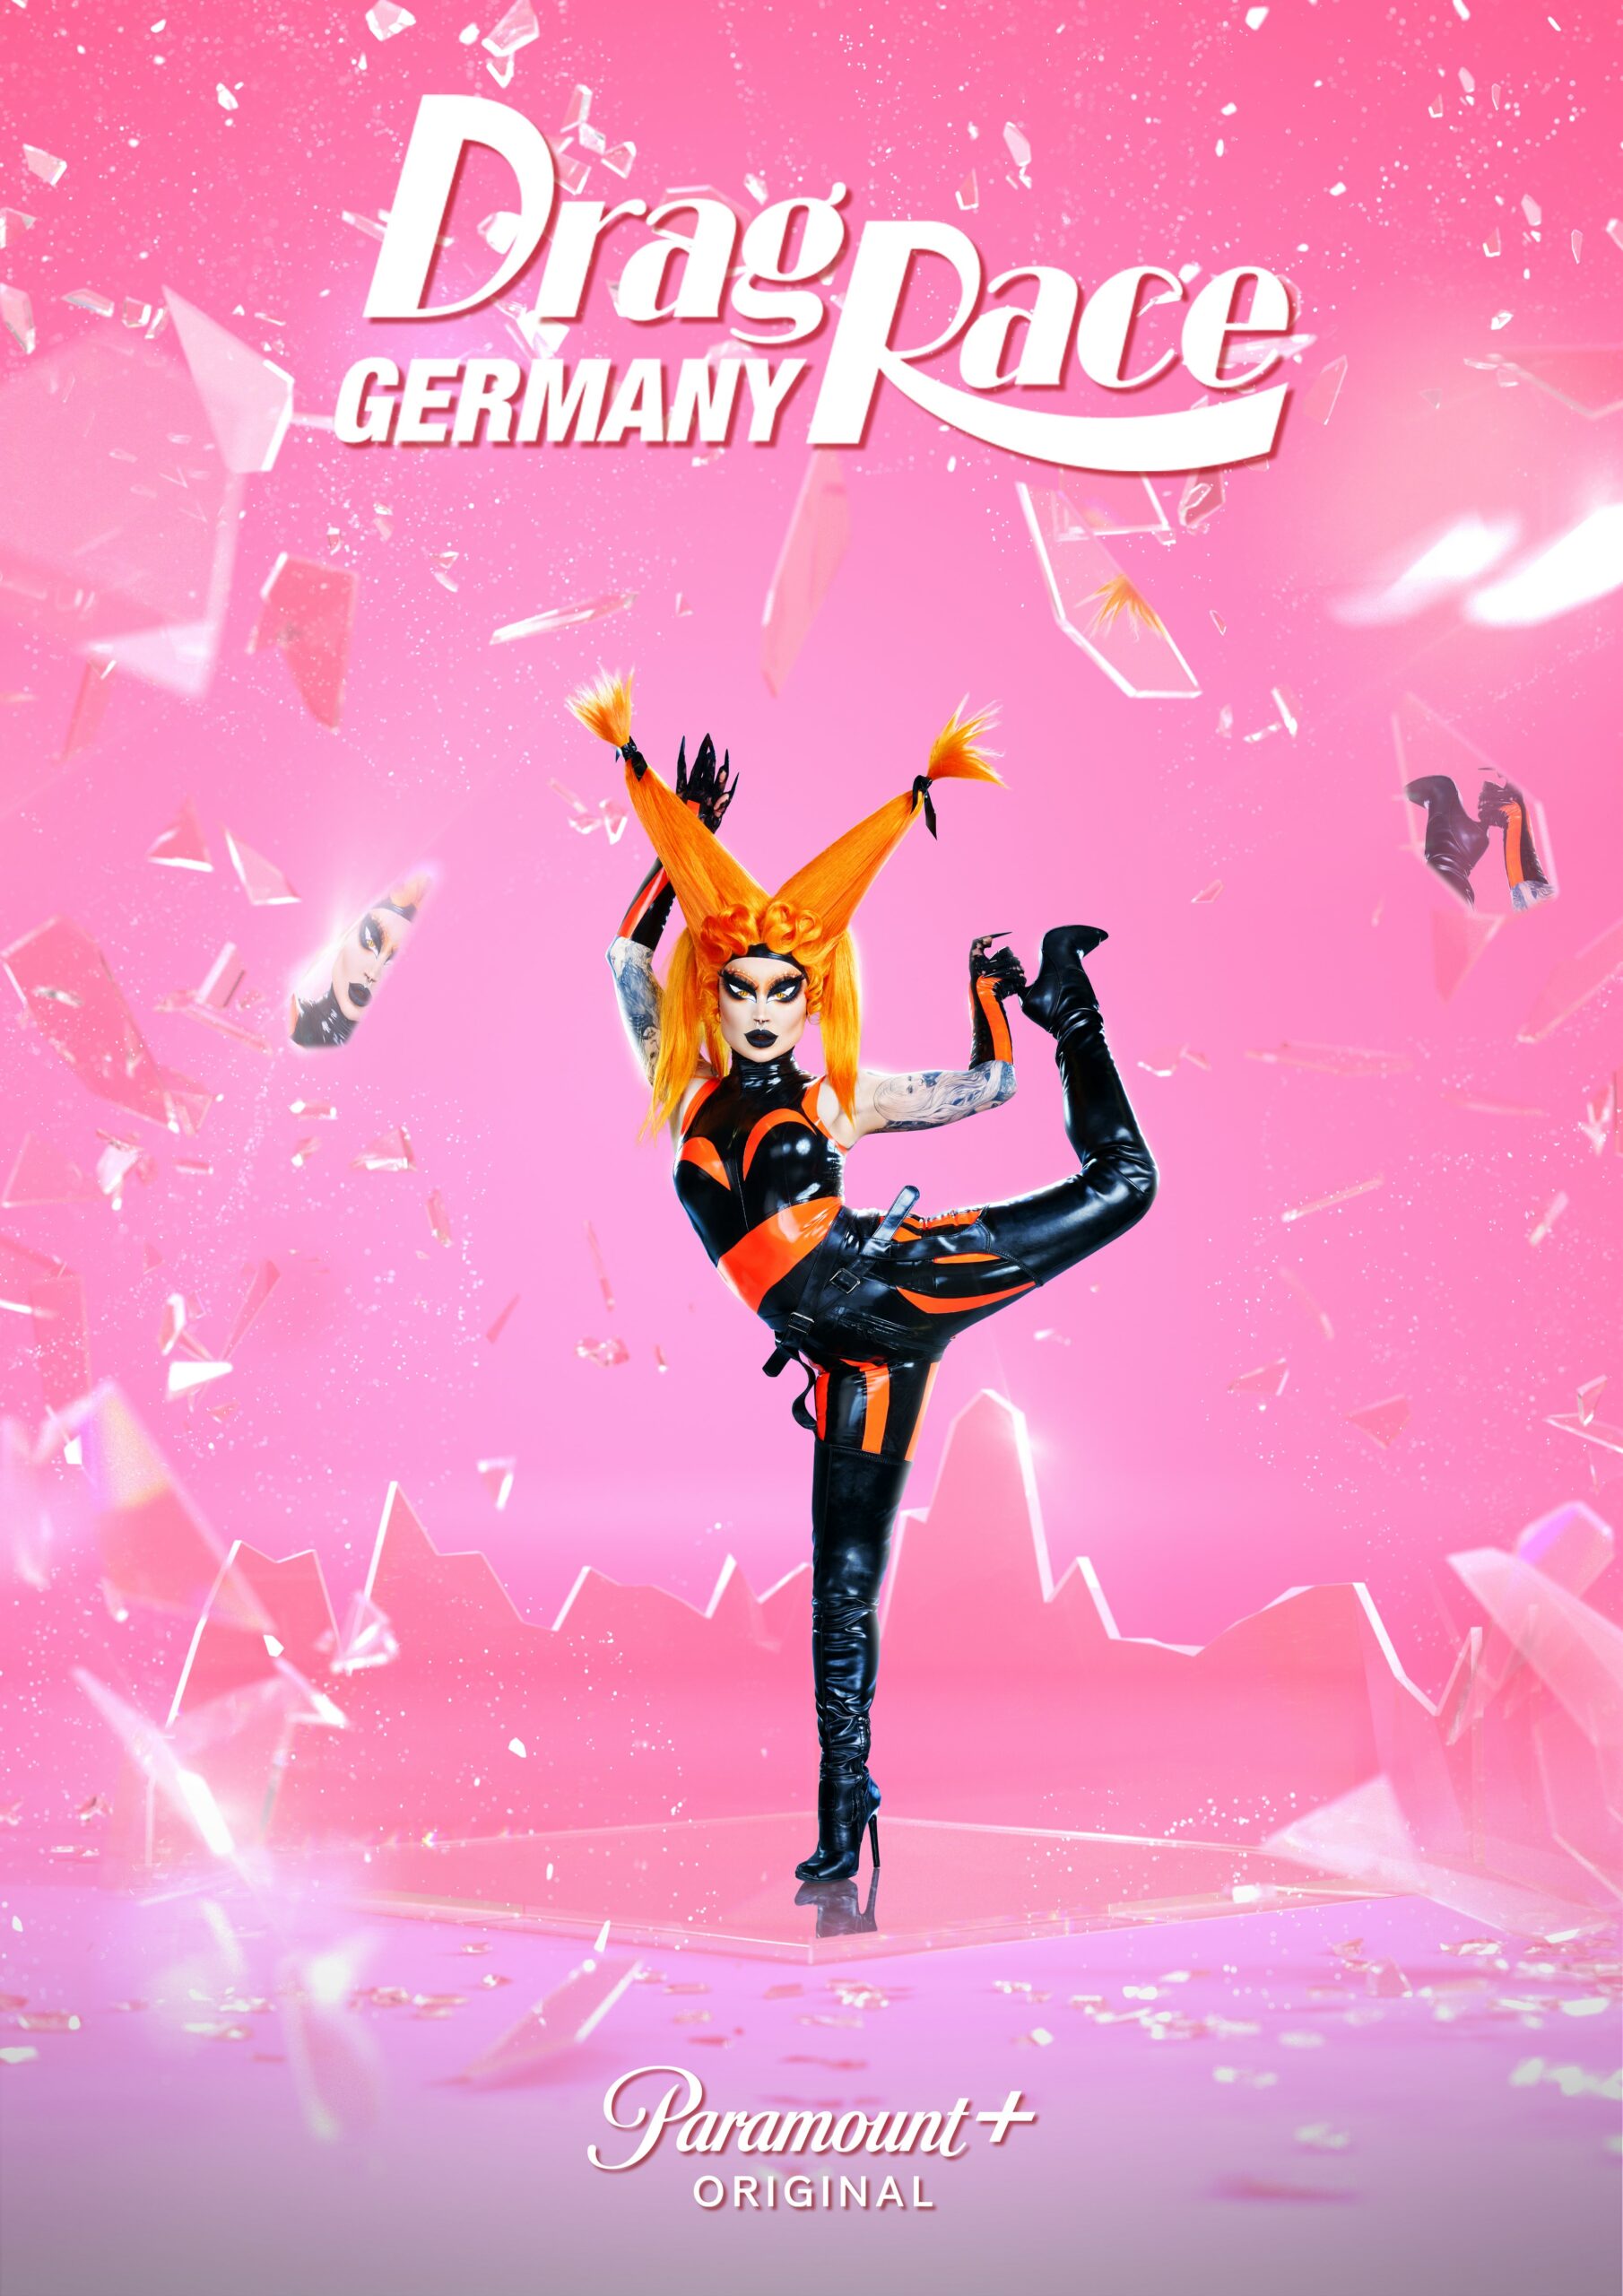 Pandora Nox Gewinnerin von Drag Race Germany steht in ihrem Promo Look zu Drag Race Germany mit erhobenem Bein auf einer Spiegelfläche. Sie trägt eine Kombination aus orange und schwarz.